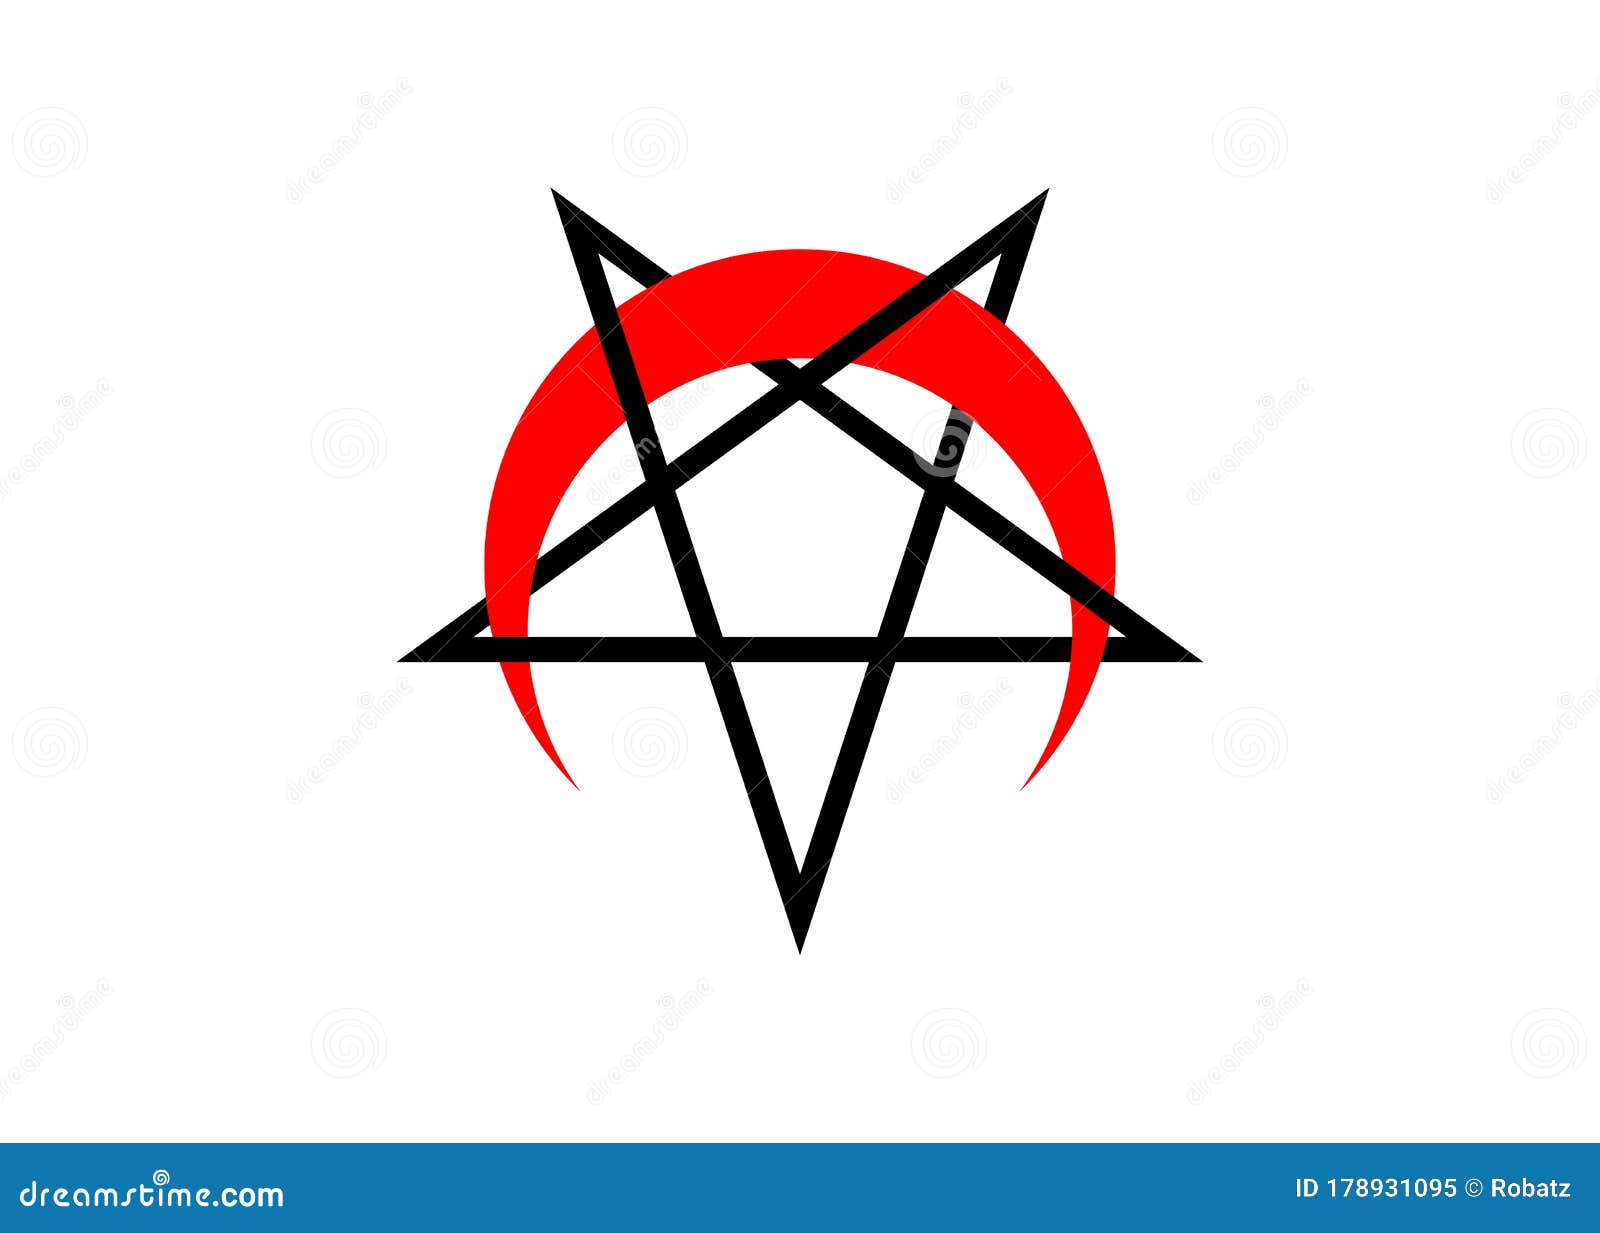 Satanist Symbol Stock Illustrations – 122 Satanist Symbol Stock  Illustrations, Vectors & Clipart - Dreamstime